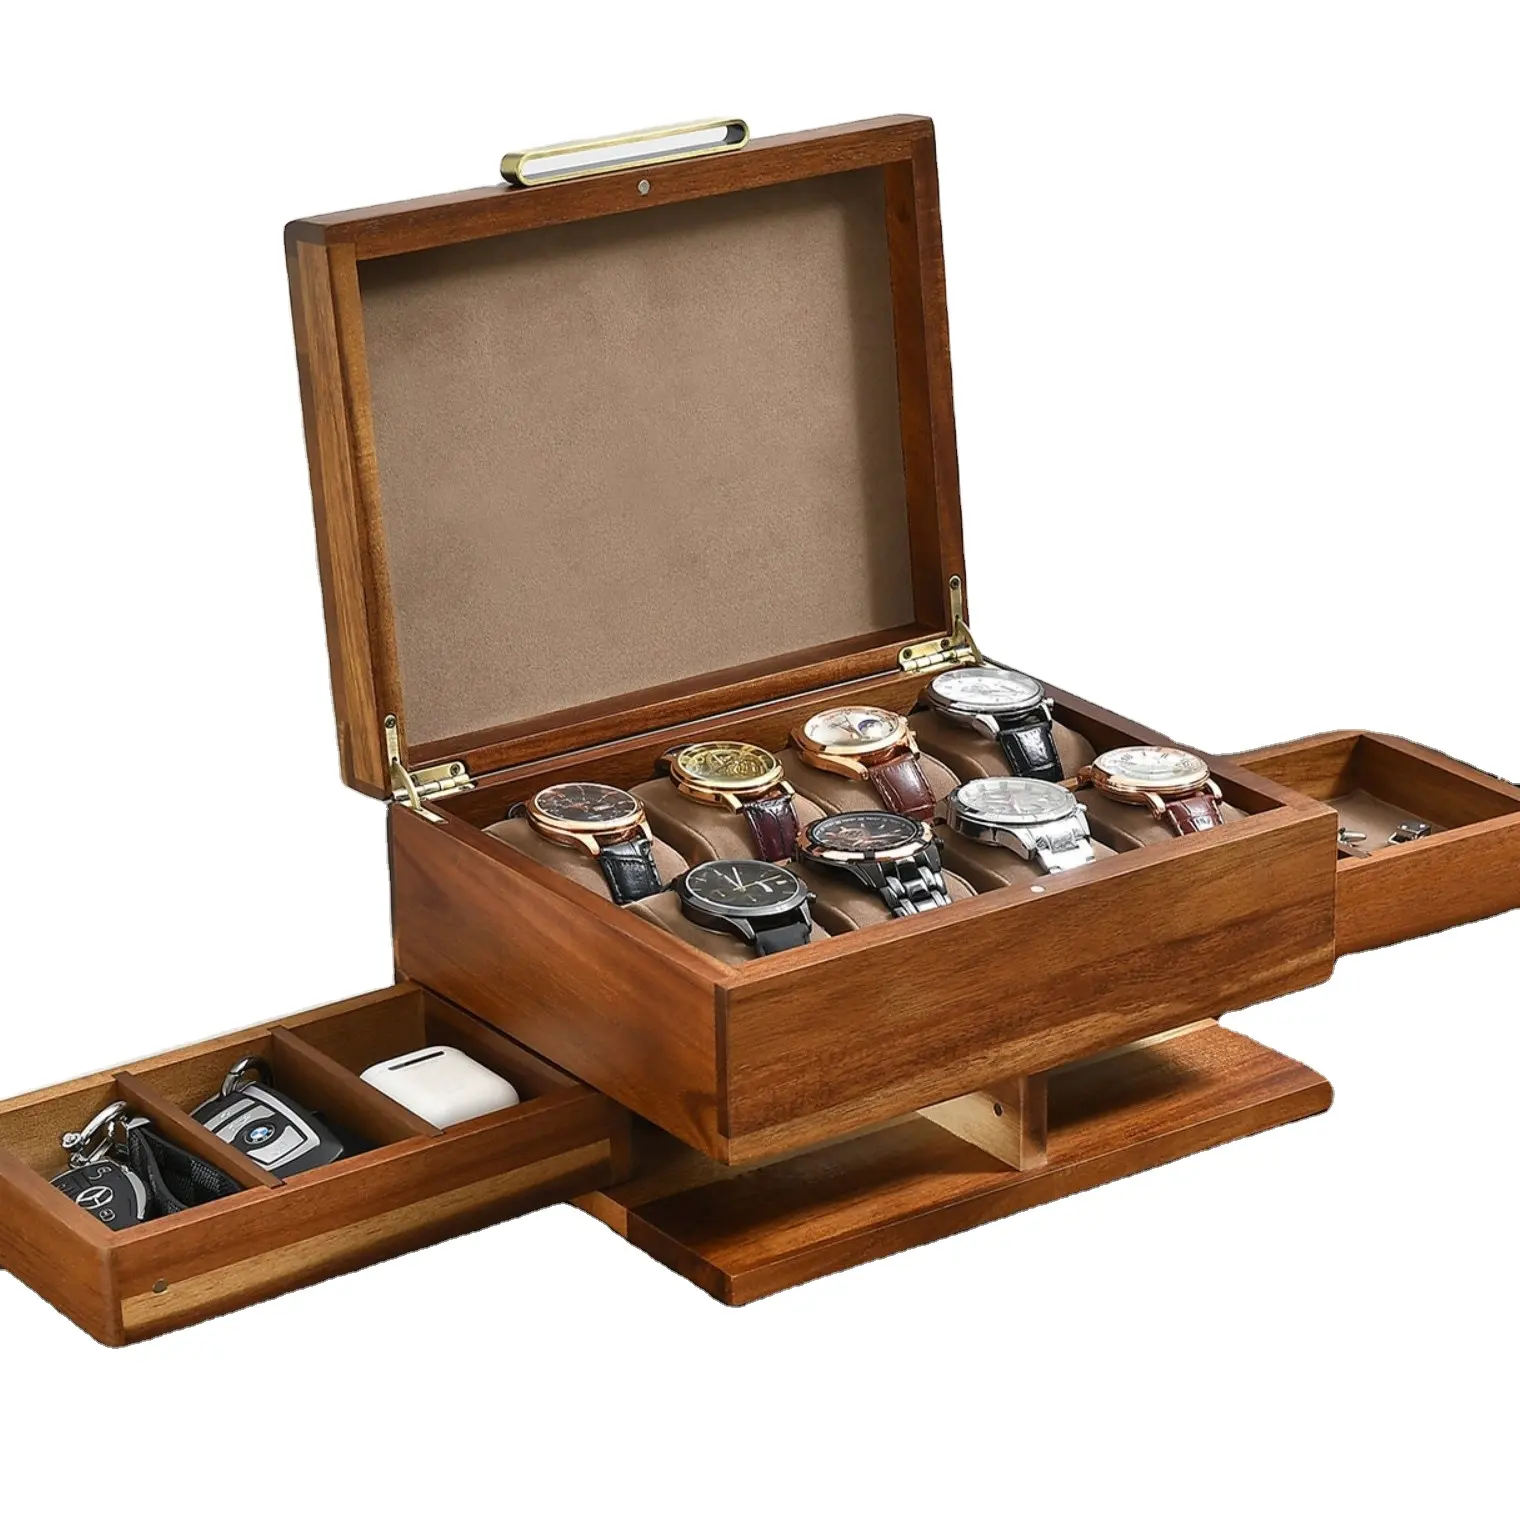 Su misura scatola di legno profumo artigianato inciso 8 Slot Display fatto a mano Organizer con accessori legno scatola di orologio per il regalo